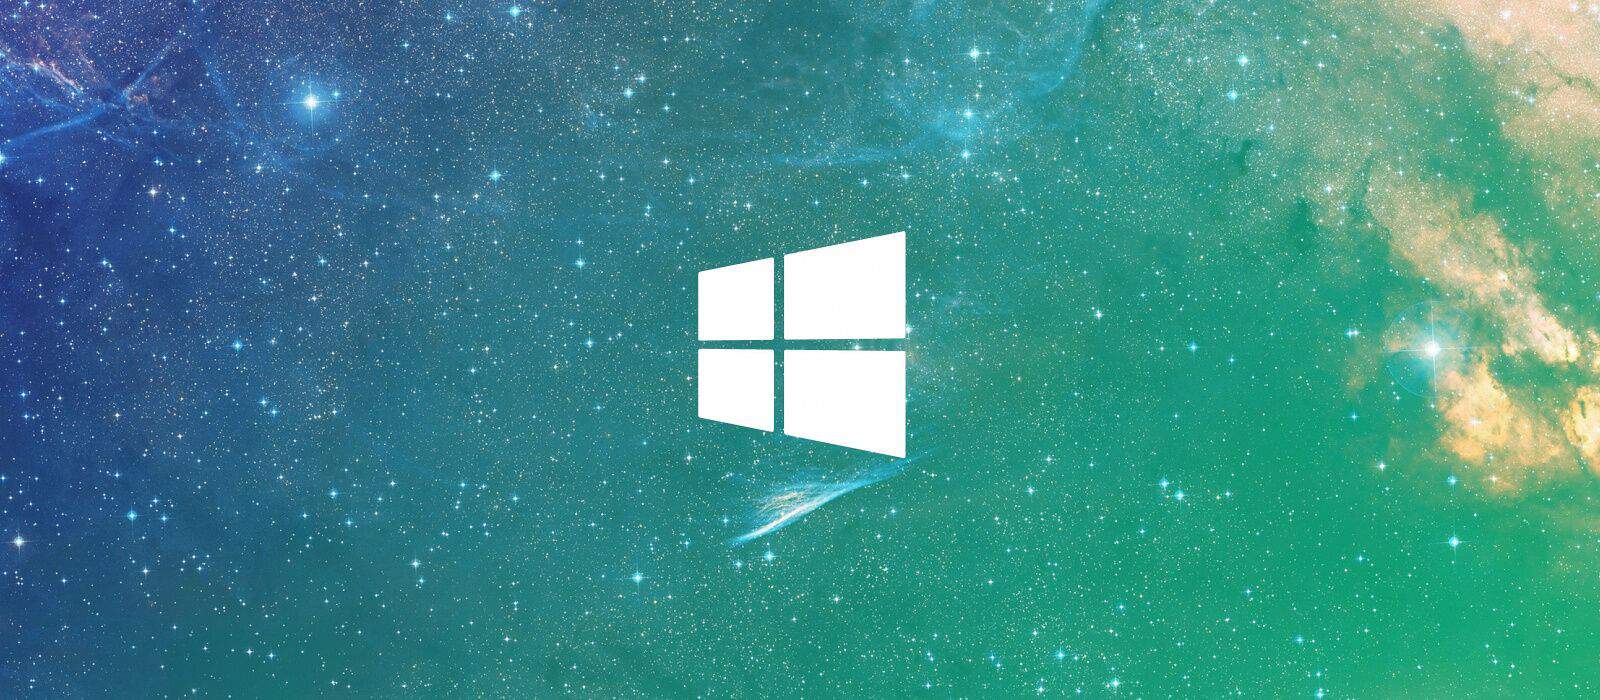 Soldes GVGmall : Windows 10 licence à vie pour €13 et Office pour €24, réductions de 90% !